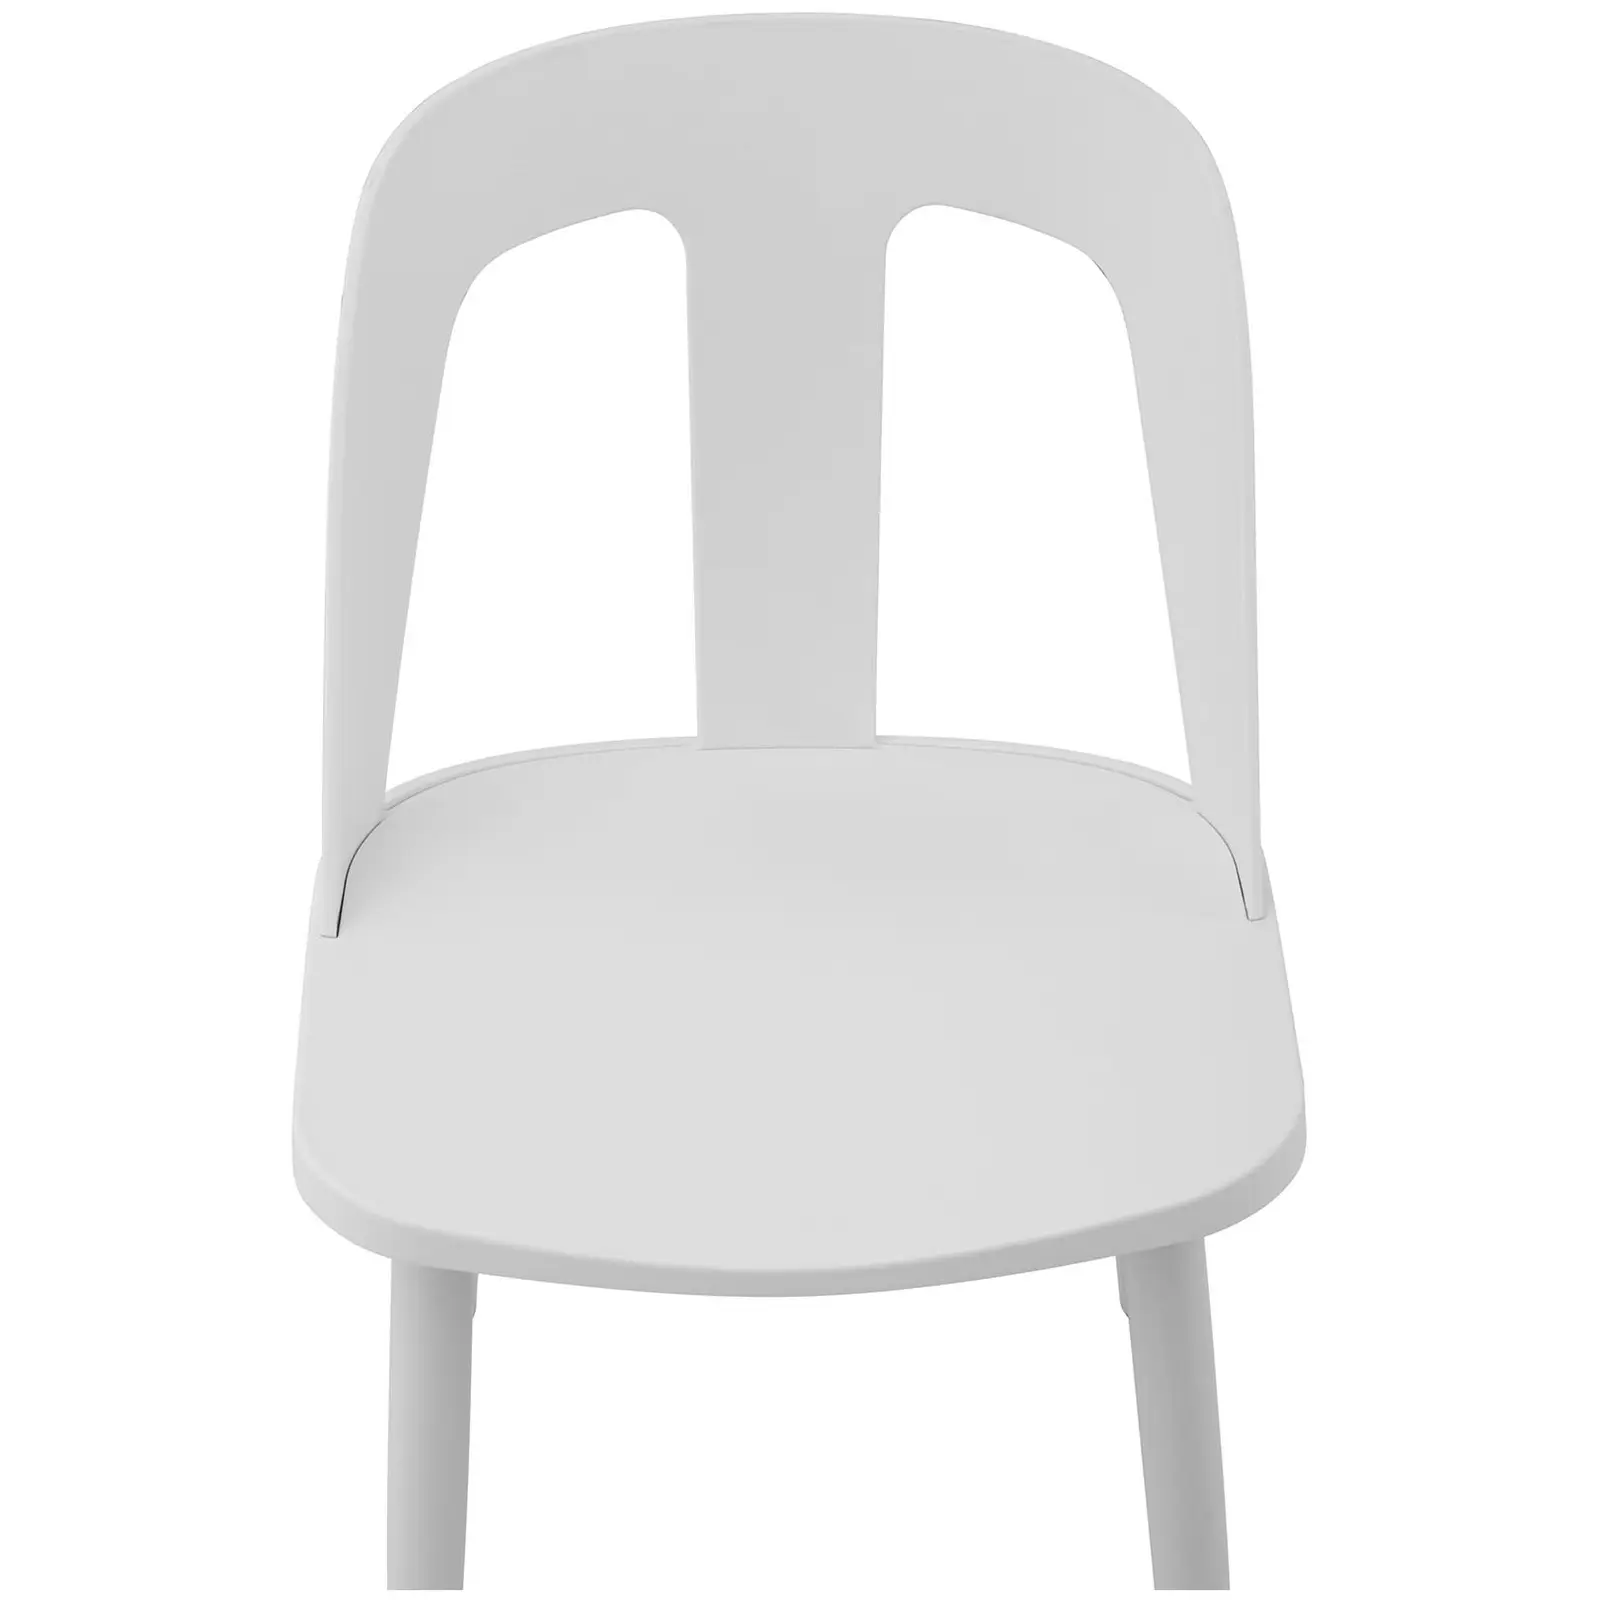 Sedie in polipropilene - Set da 2 - Fino a 150 kg - Seduta 56 x 46,5 cm - Bianche-Nere